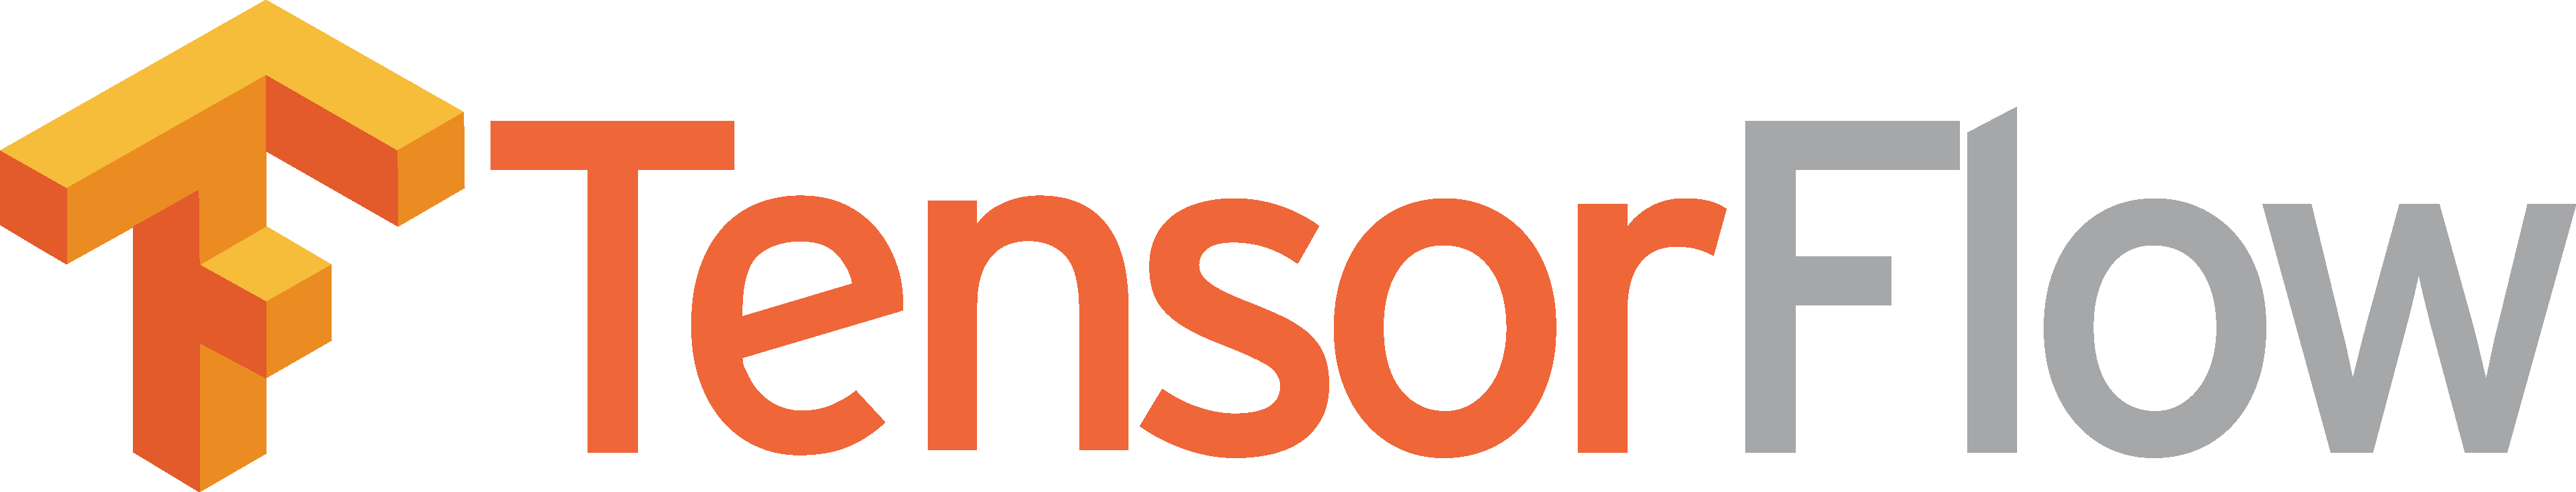 Tensorflow Logo Download Vector